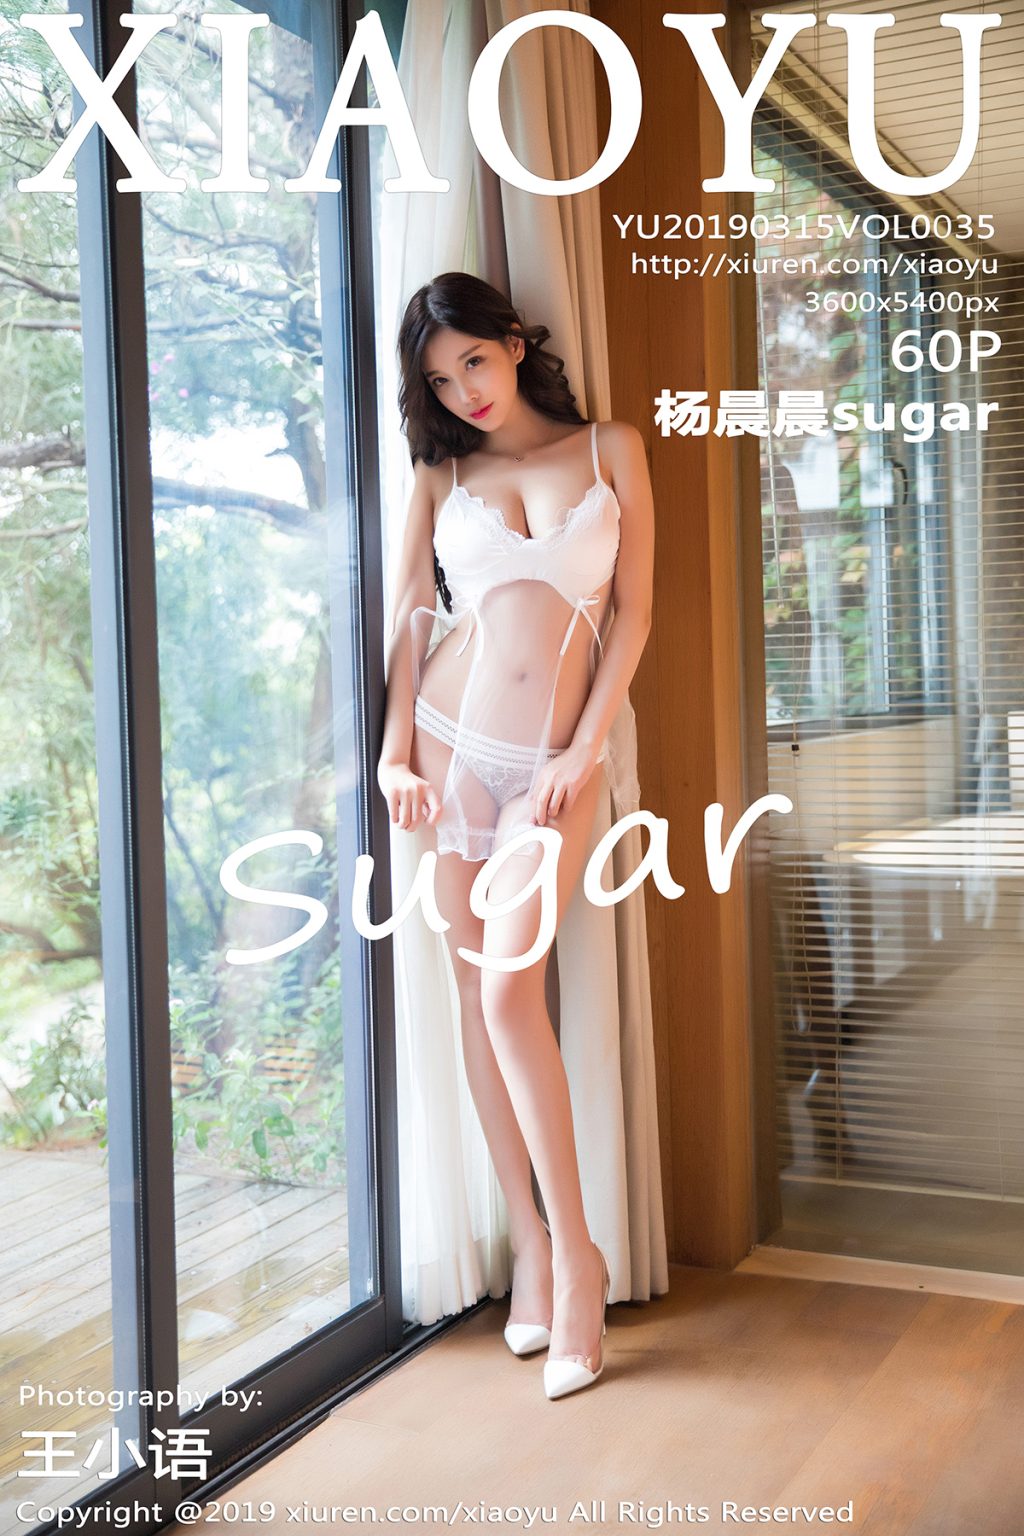 Watch sexy XiaoYu Vol.035: Người mẫu Yang Chen Chen (杨晨晨sugar) photos